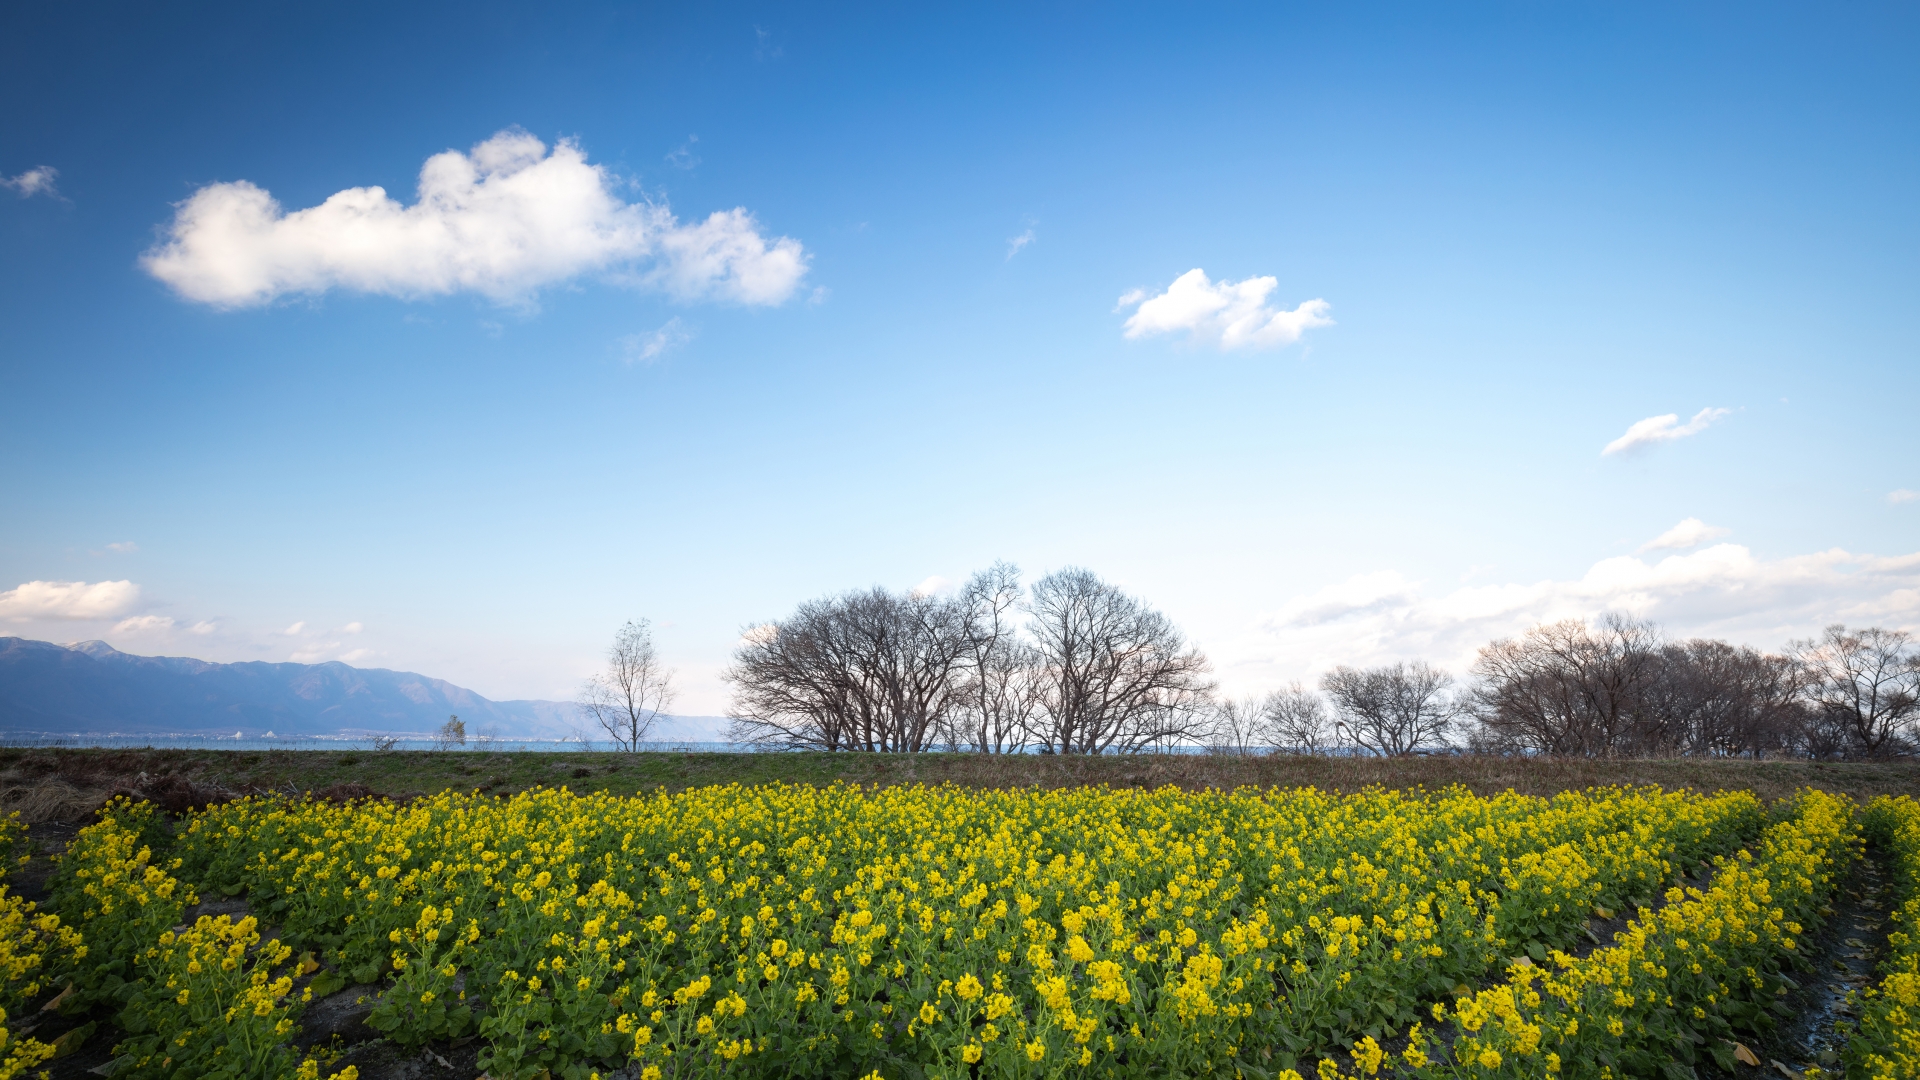 3915746_m 滋賀県  第一なぎさ公園(雪が残る比良山と約12000本の菜の花のコントラストが美しい冬におすすめの絶景スポット! 写真の紹介、アクセス情報や駐車場情報など)　